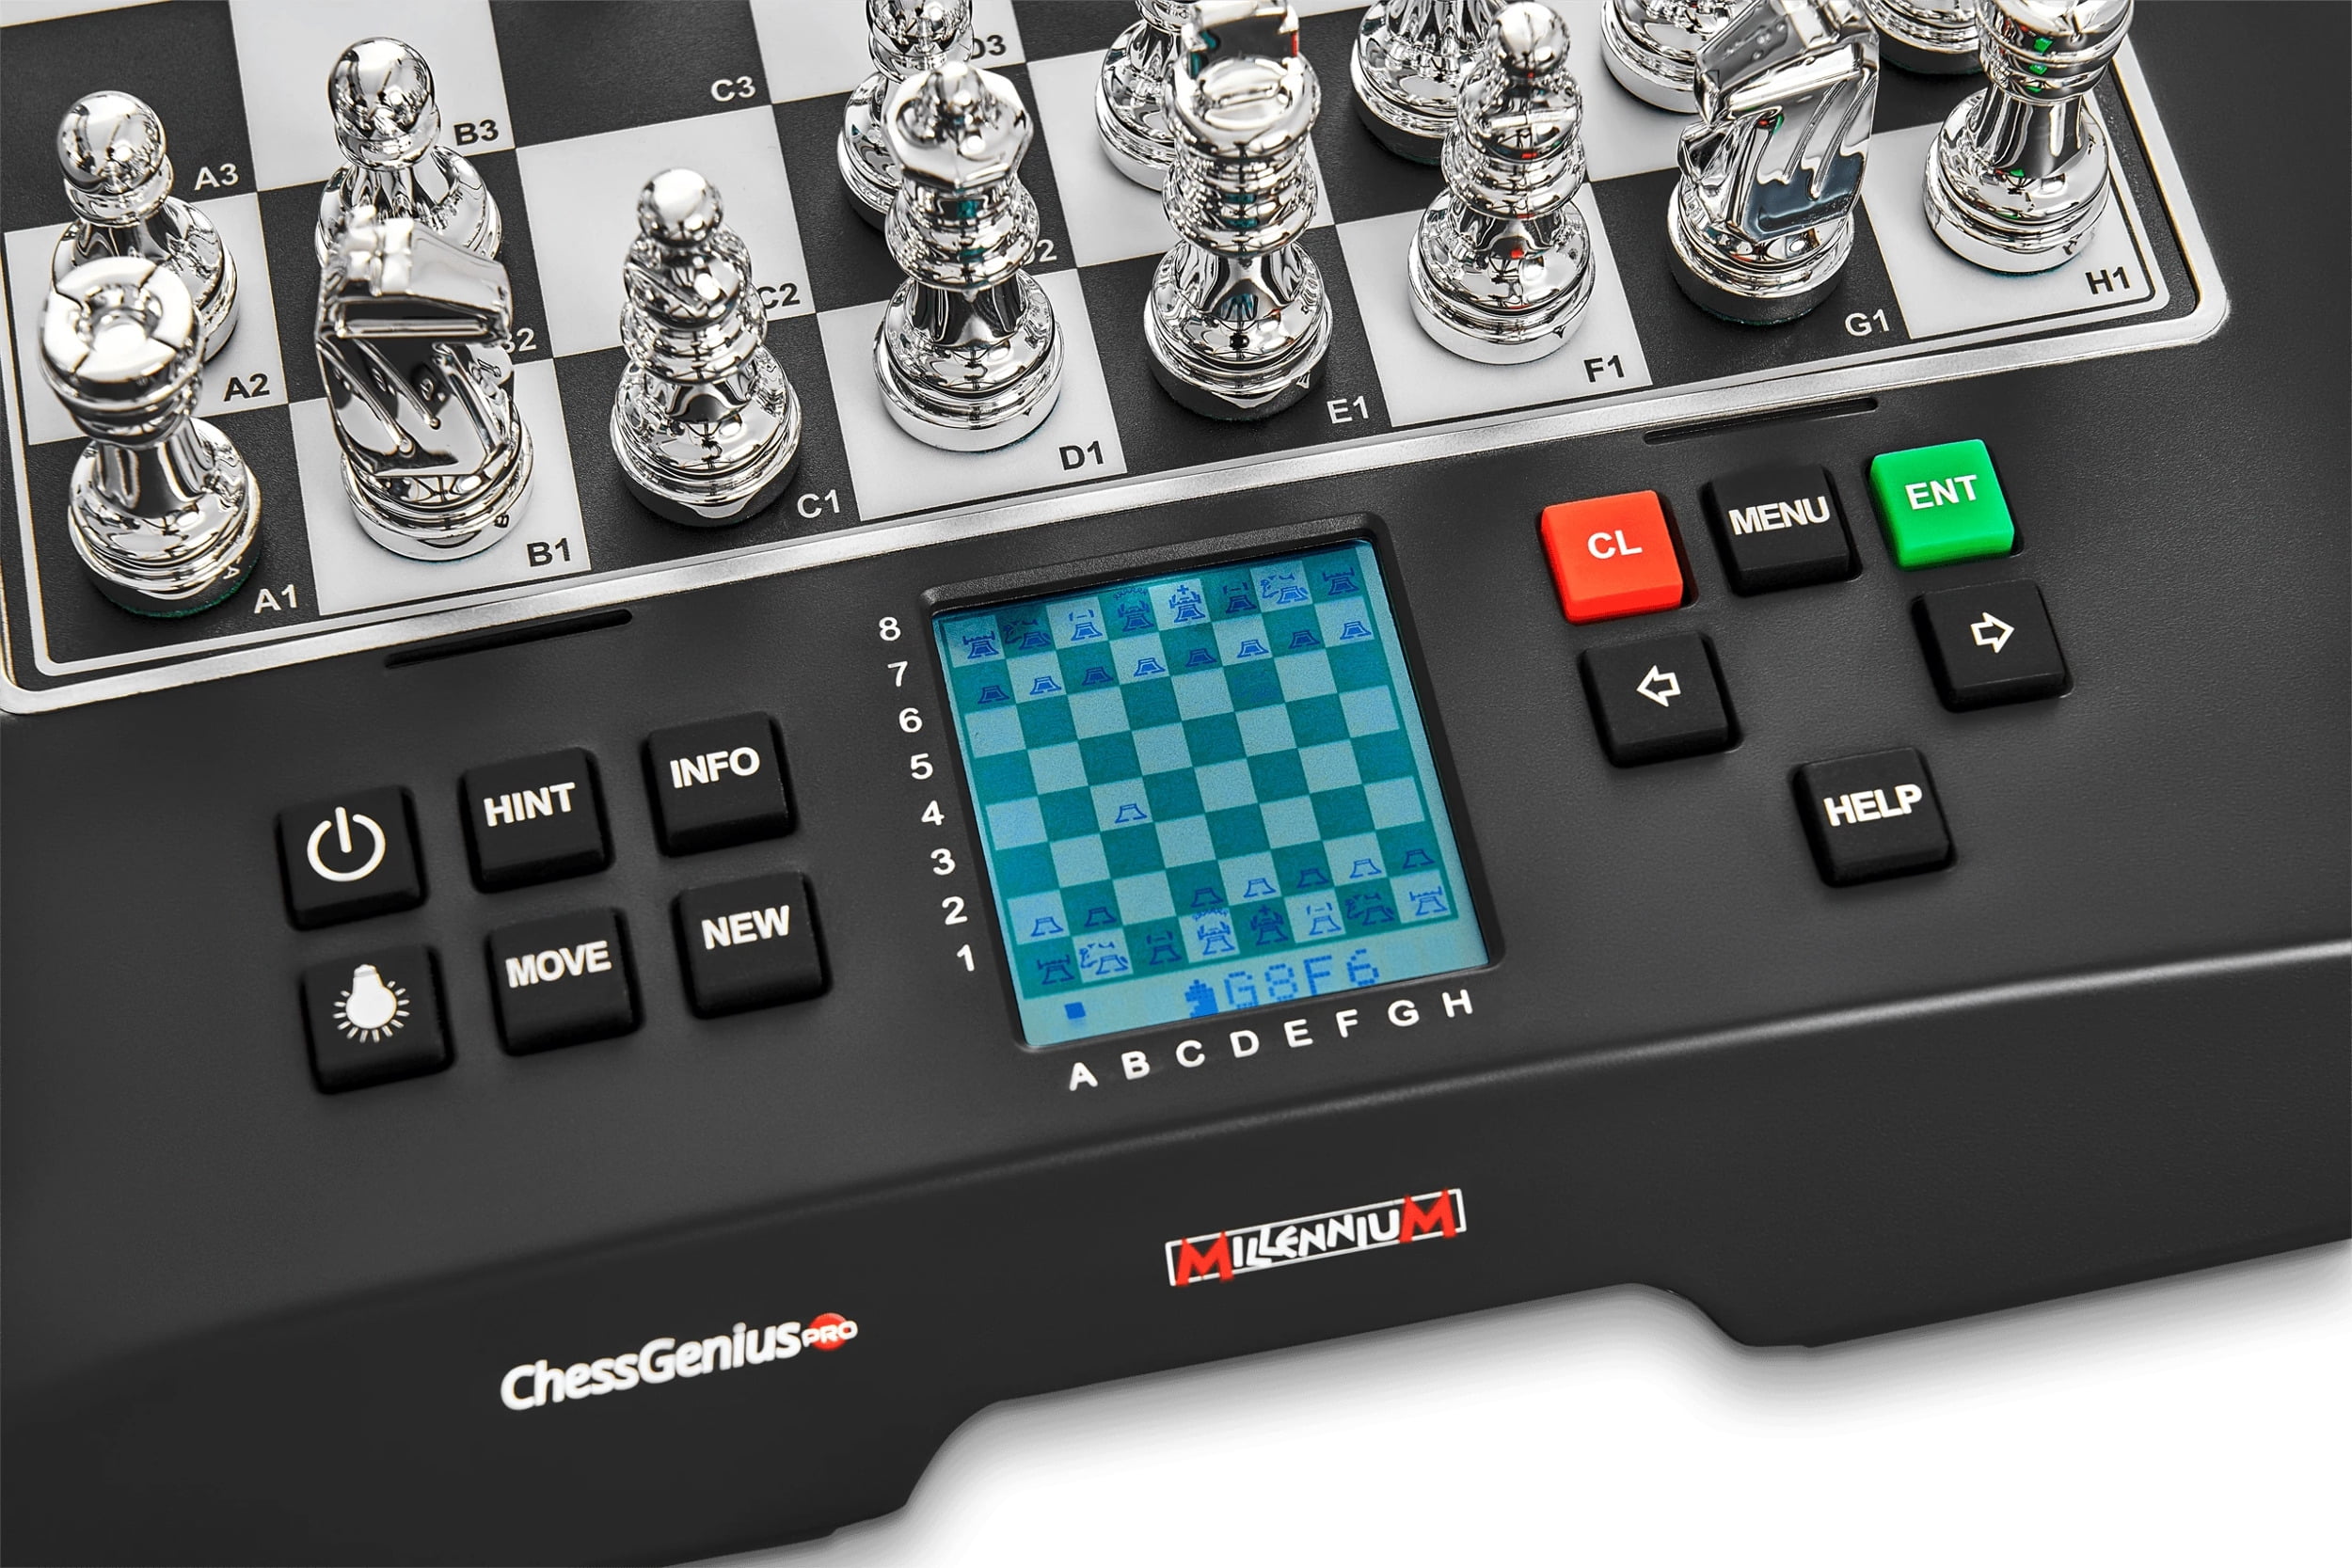 The Millennium ChessGenius Pro Chess Computer